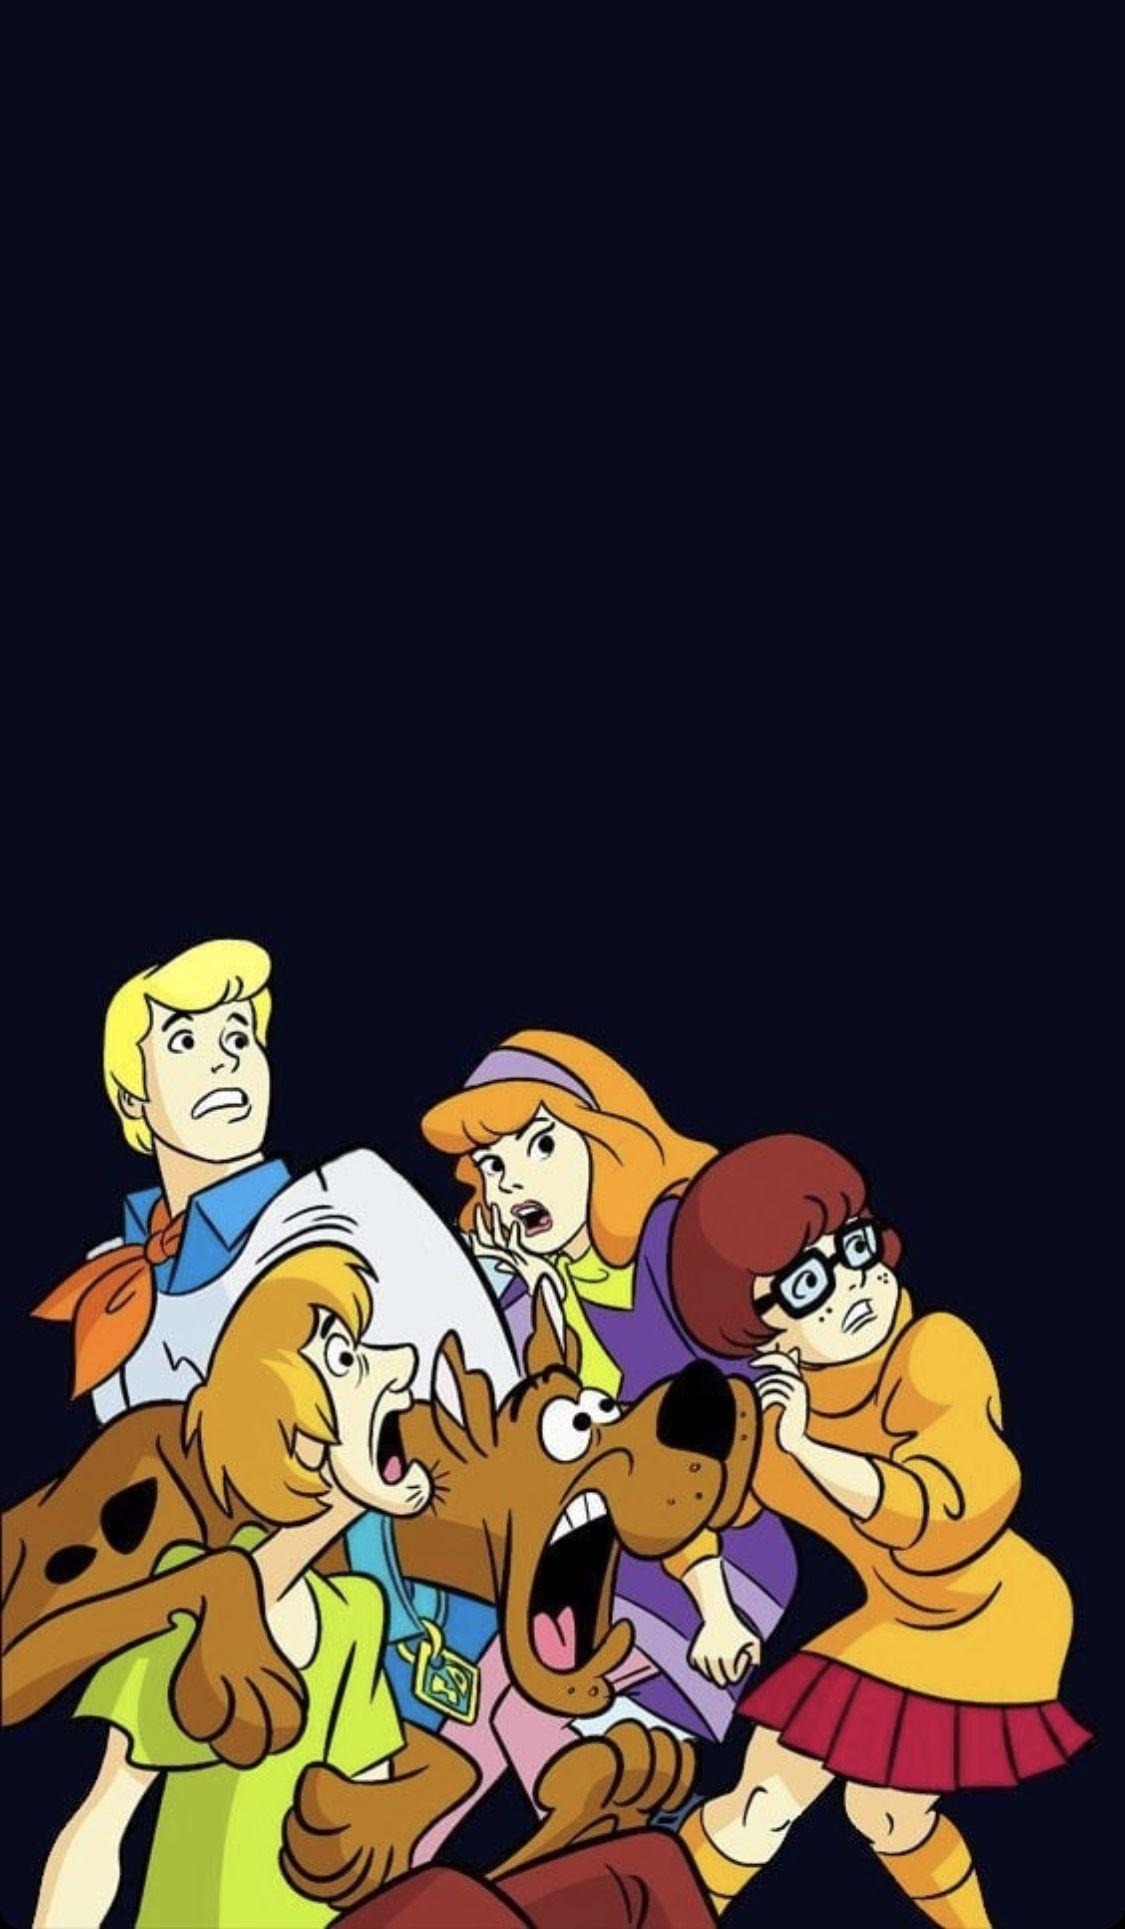 Wallpaper. Background. Scooby Doo, iPhone wallpaper